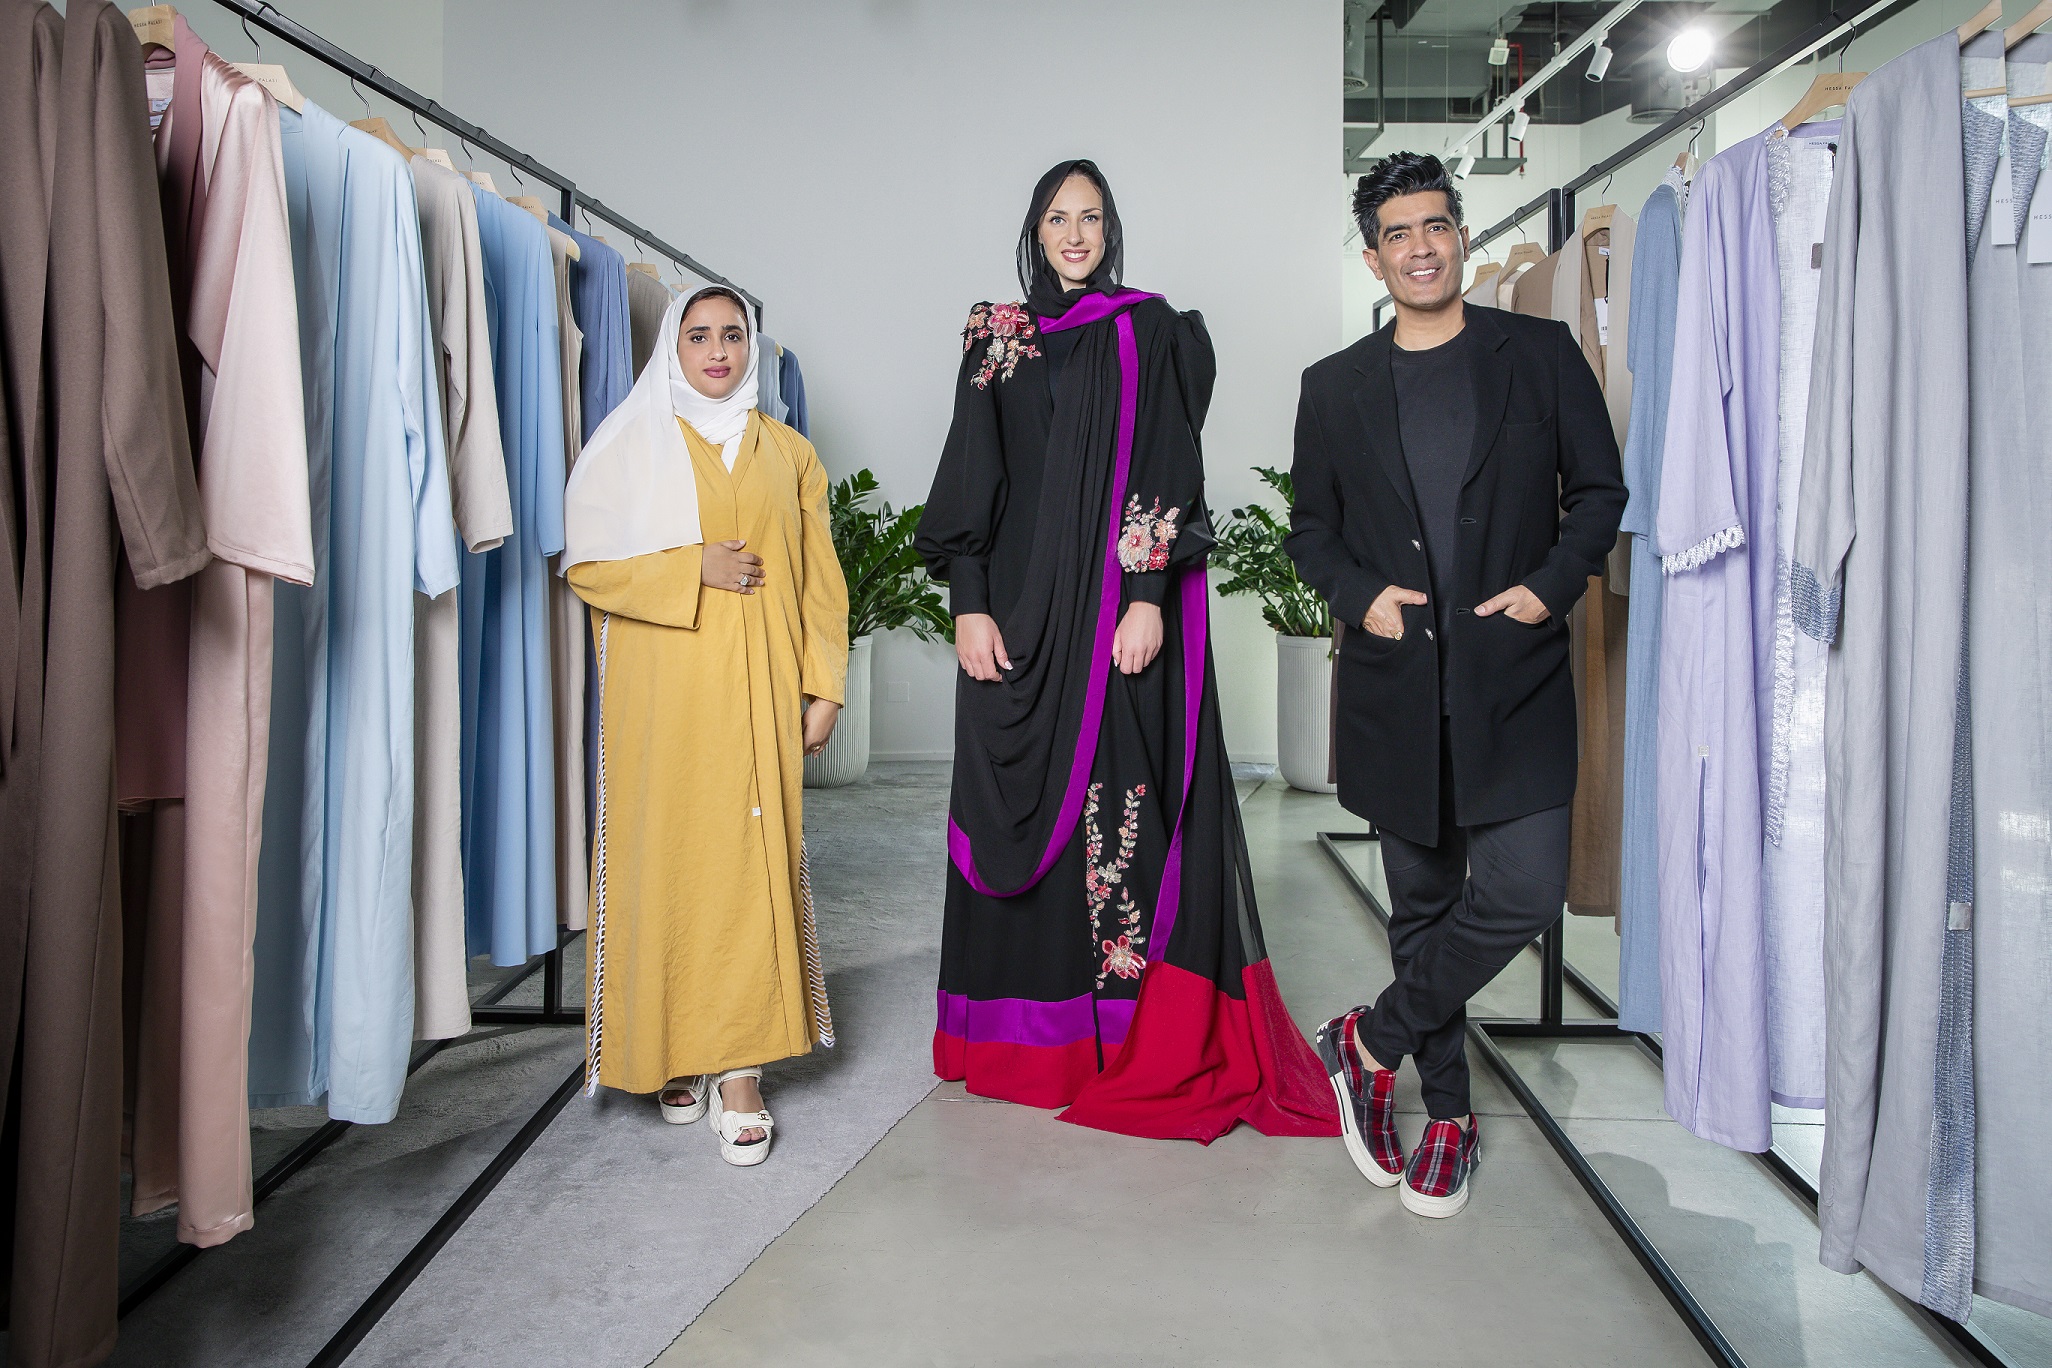  الاتحاد تجمع بين مصممي أزياء من الإمارات والهند لابتكار "عباية ساري"